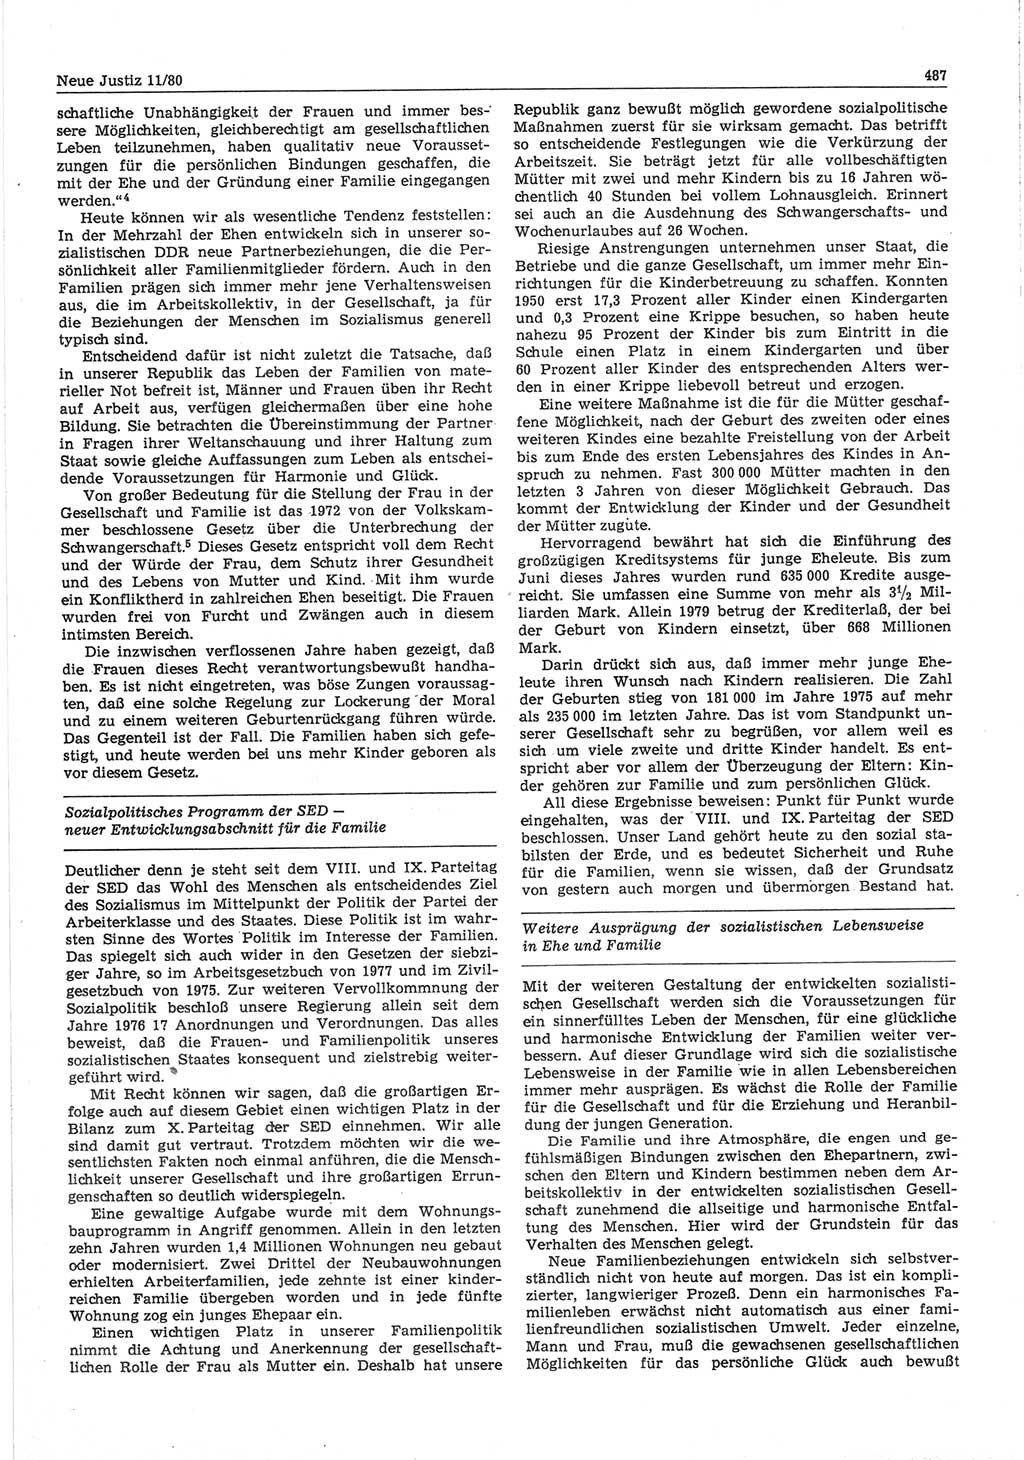 Neue Justiz (NJ), Zeitschrift für sozialistisches Recht und Gesetzlichkeit [Deutsche Demokratische Republik (DDR)], 34. Jahrgang 1980, Seite 487 (NJ DDR 1980, S. 487)